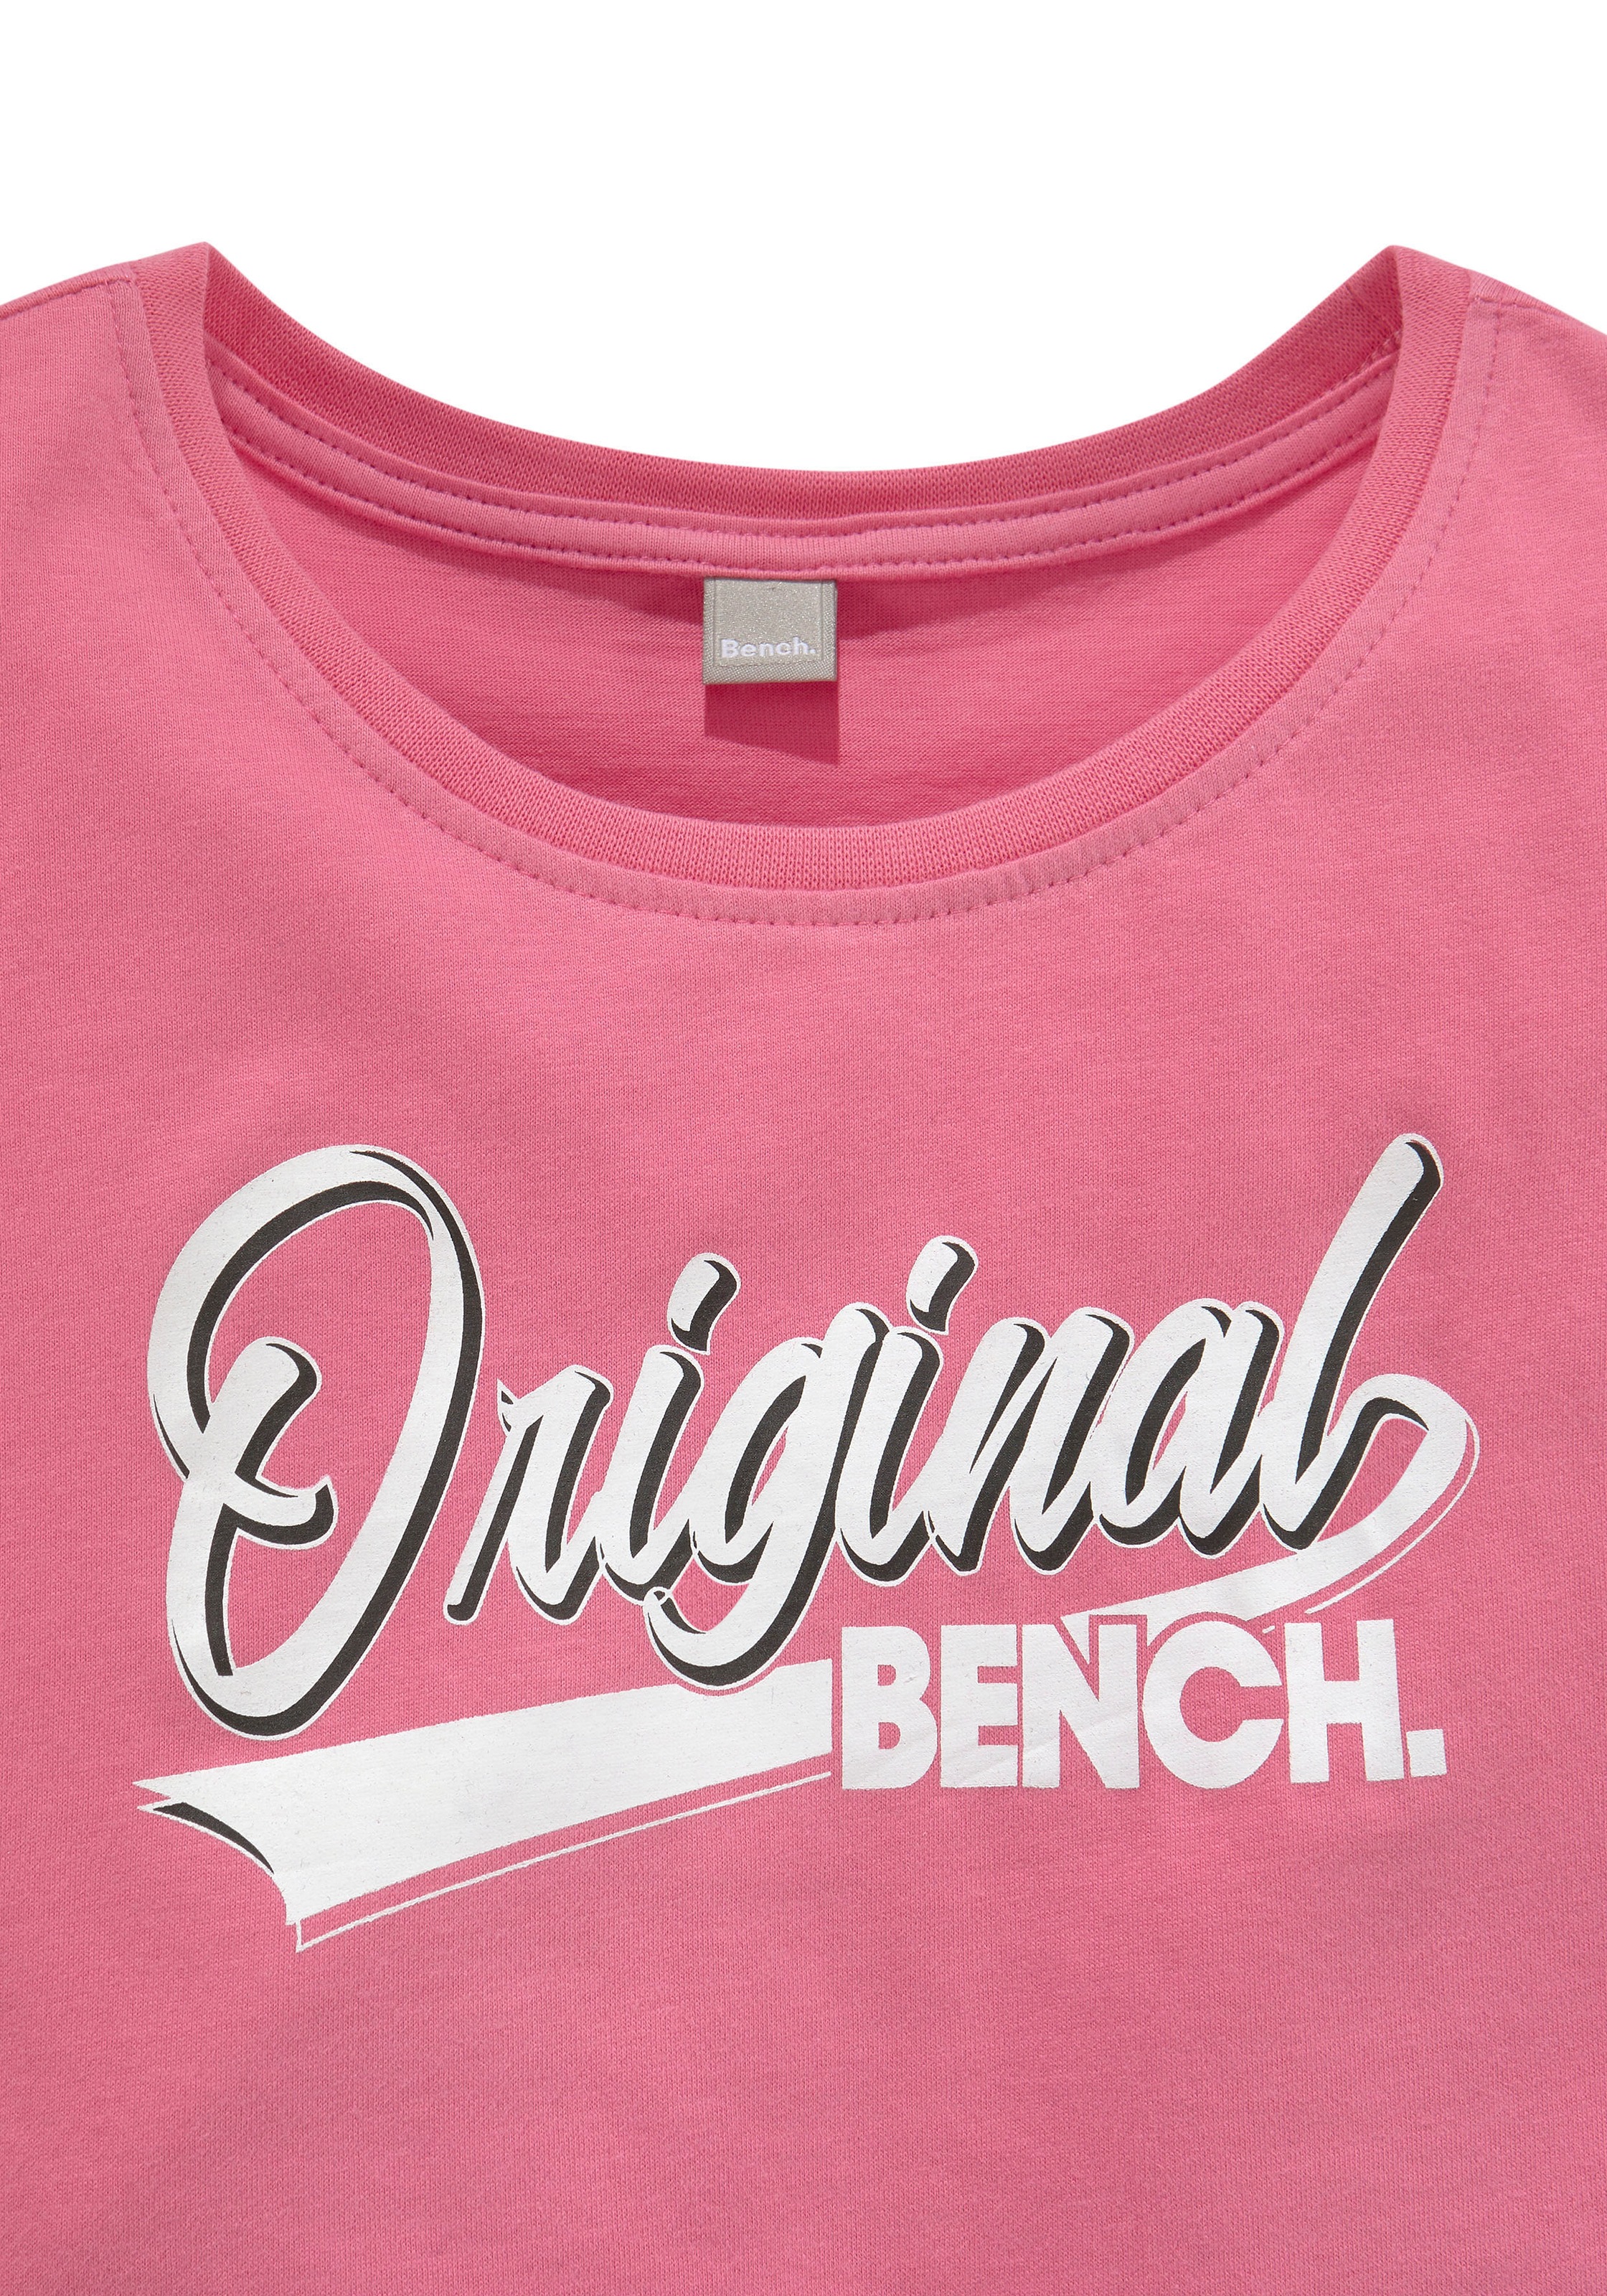 T-Shirt, ligne en Acheter ✌ locker Bench. geschnitten